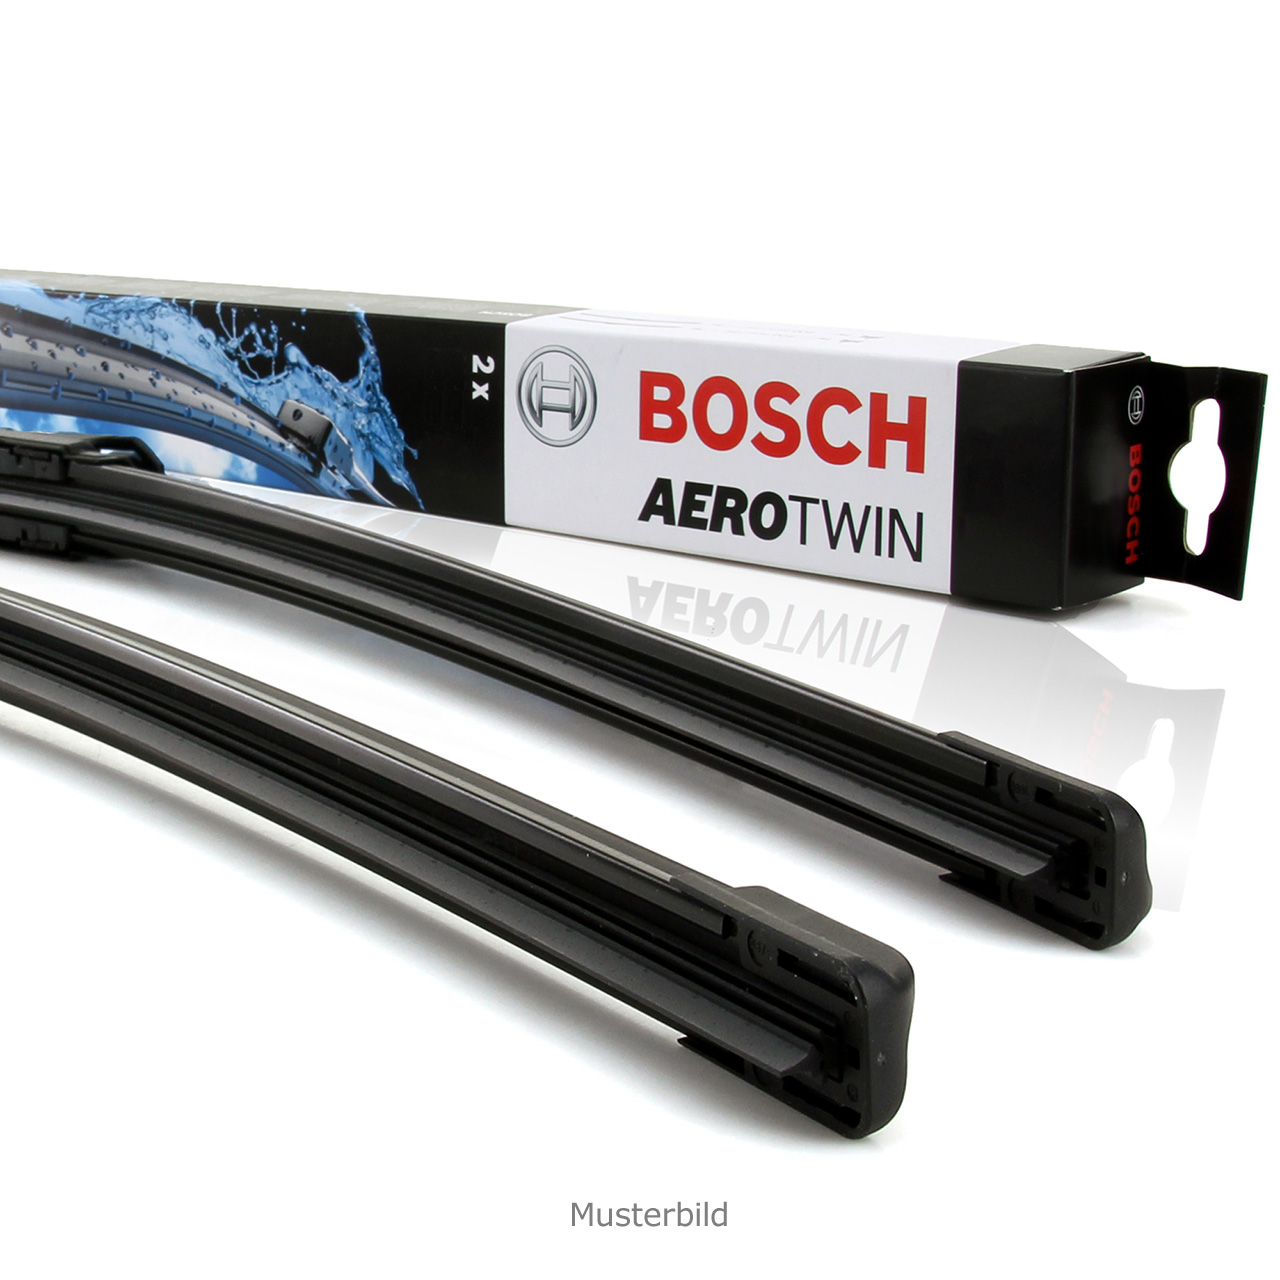 Bosch a620s - Der TOP-Favorit 